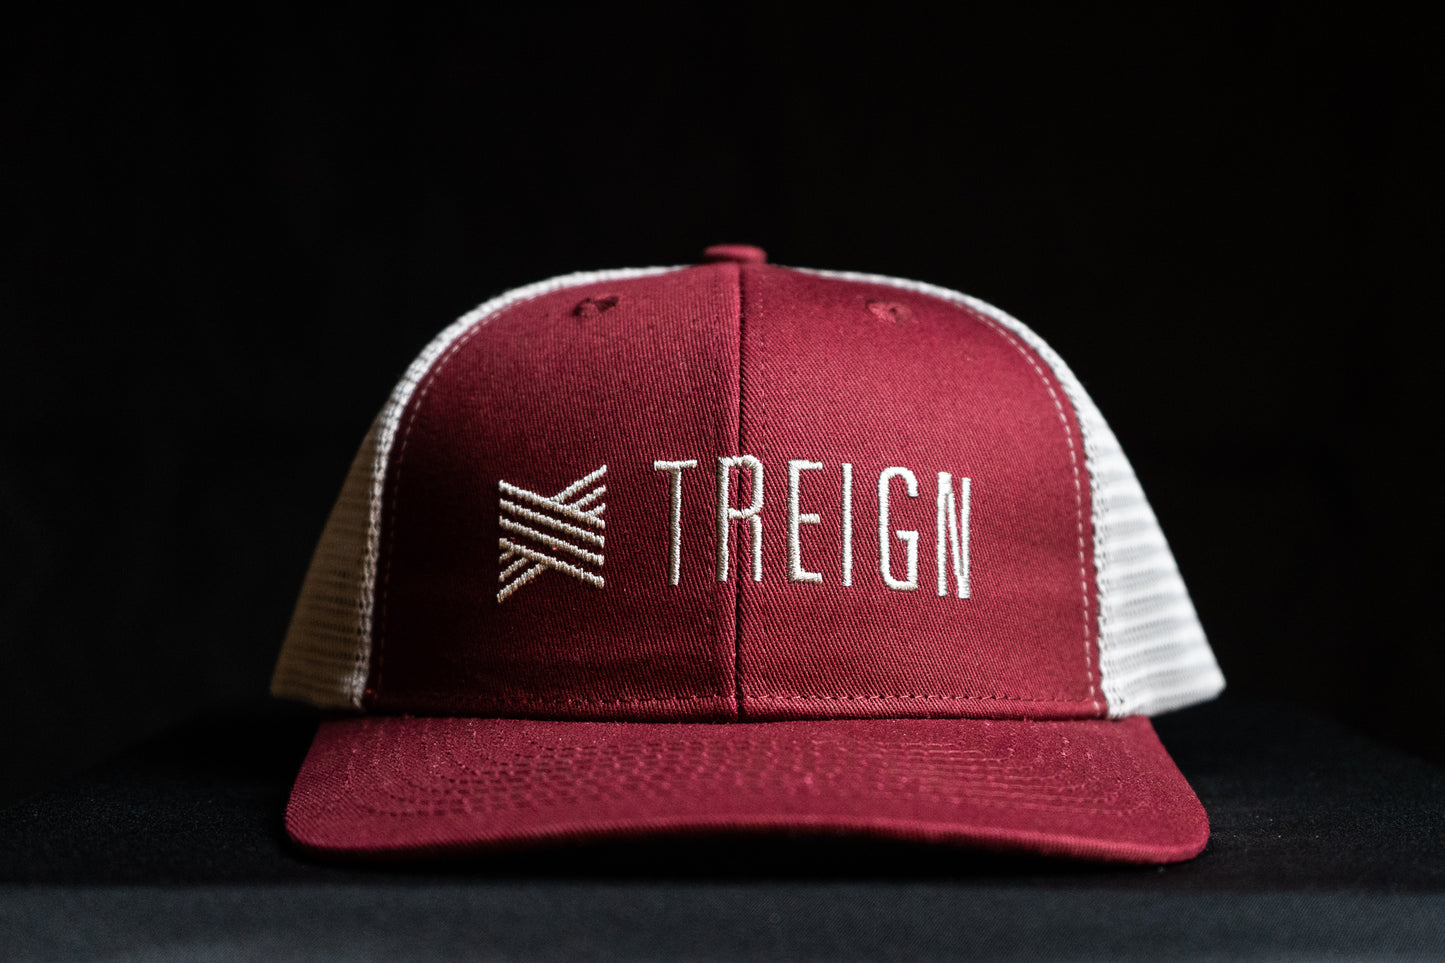 Treign Trucker Hat